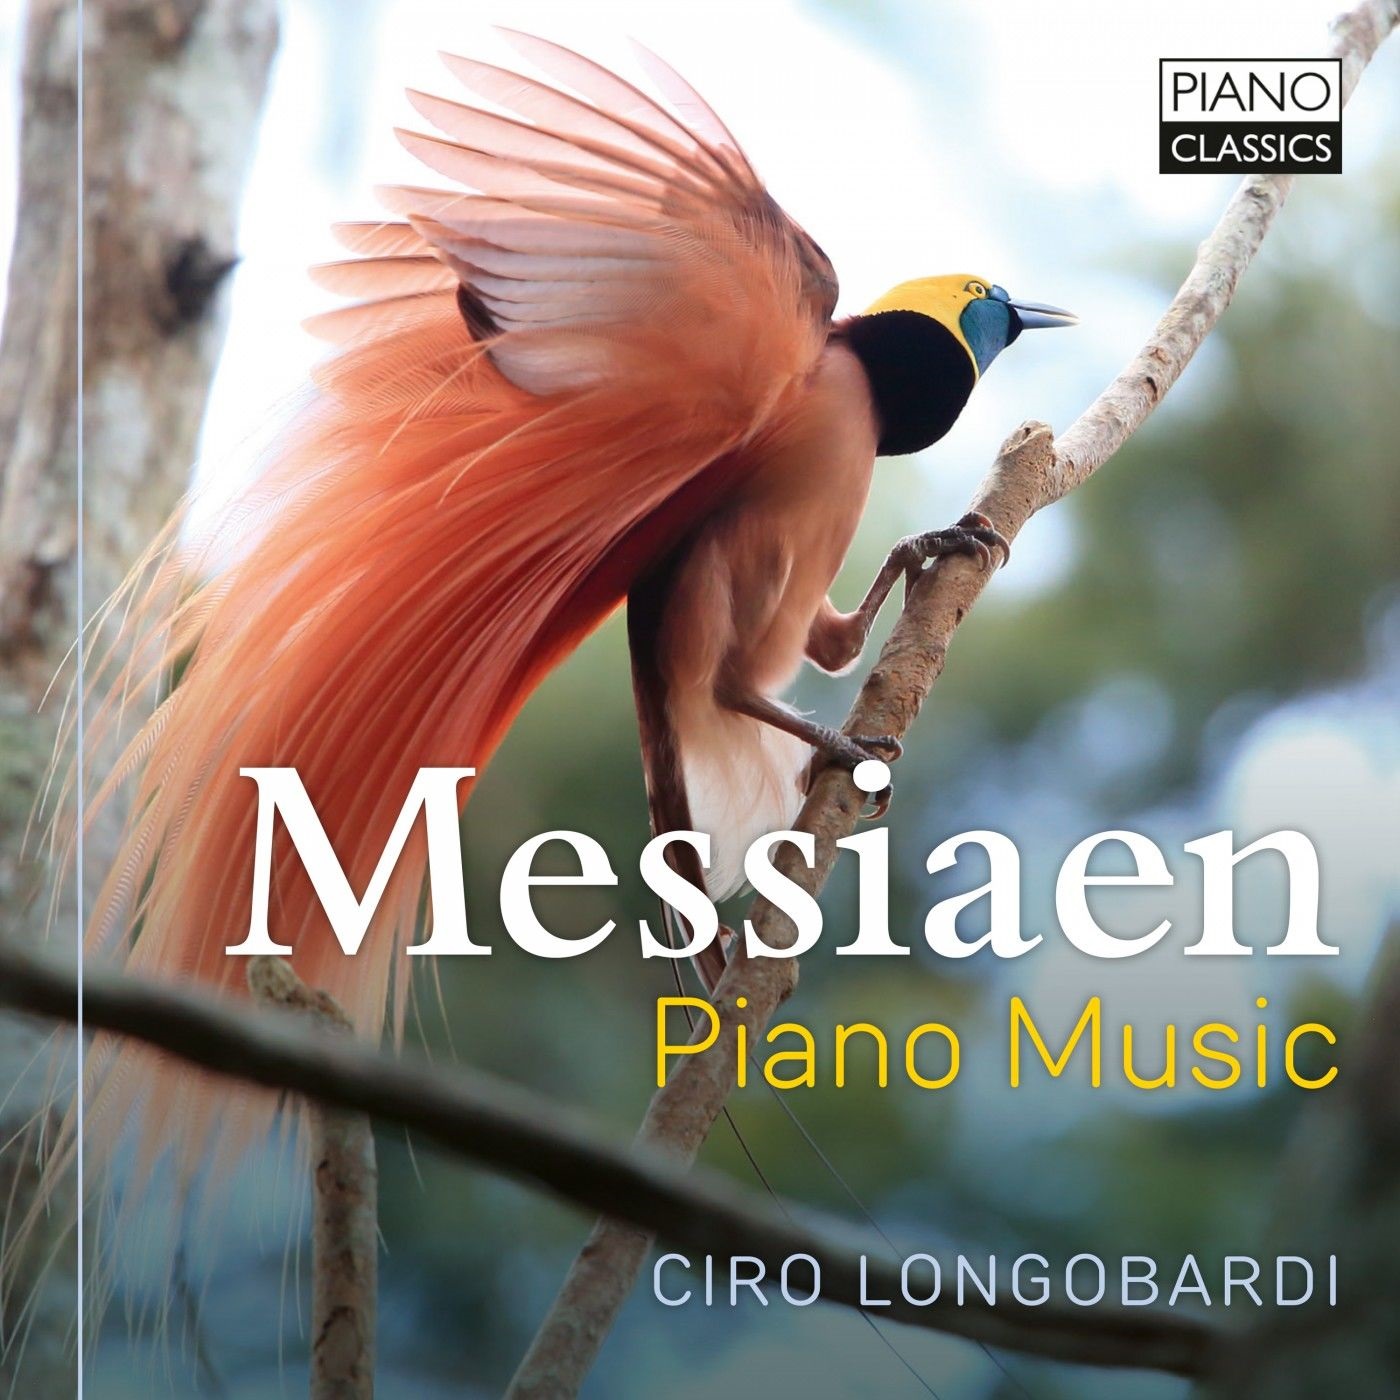 Ciro Longobardi – Messiaen: Piano Music (2021) [FLAC 24bit/96kHz]